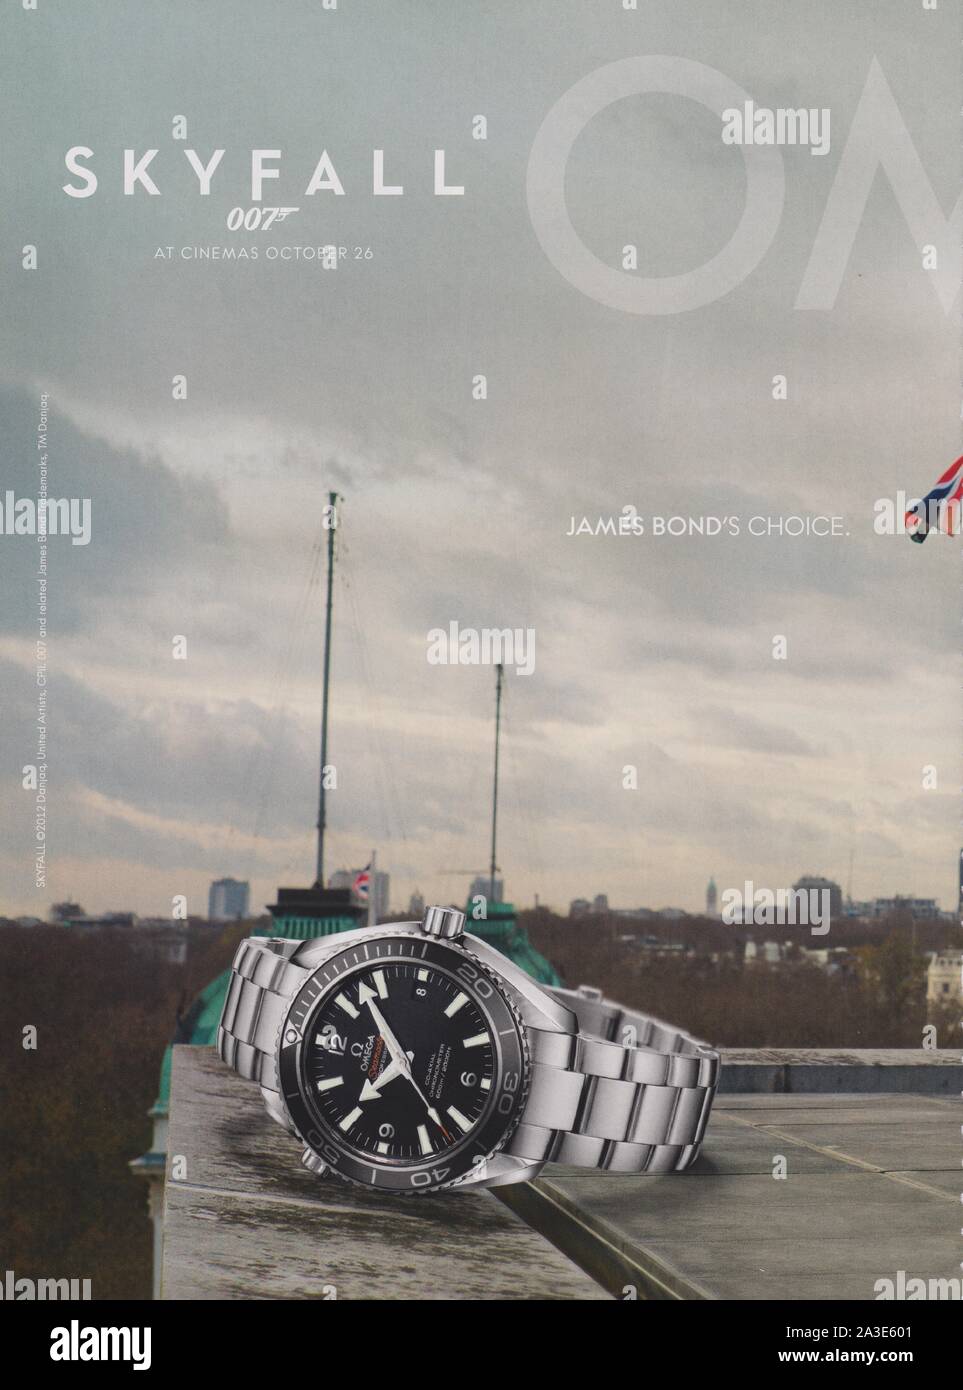 Affiche publicitaire de OMEGA watch avec Daniel Craig dans le magazine à  partir de 2012, le choix de James Bond Skyfall, une publicité, une  publicité à partir d'OMEGA créatifs 2010s Photo Stock -